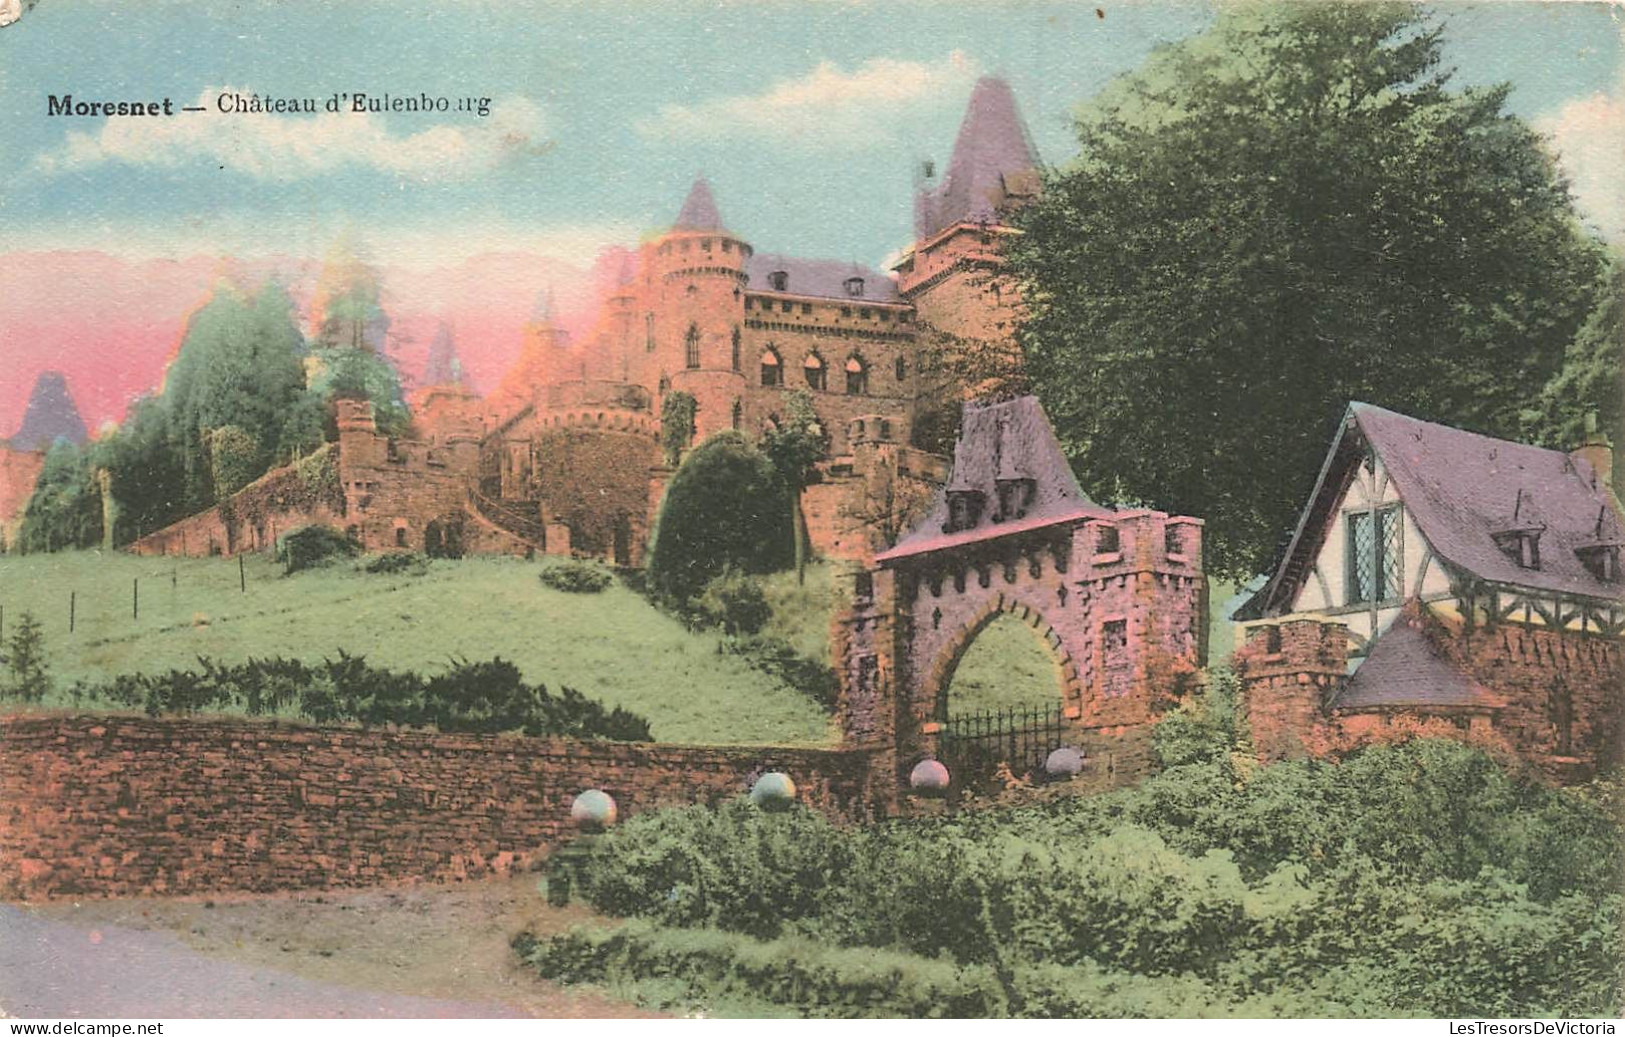 Belgique - Moresnet - Château D'Eulenbourg - Colorisé - Desaix - Vliex Frère Et Soeurs - Carte Postale Ancienne - Verviers